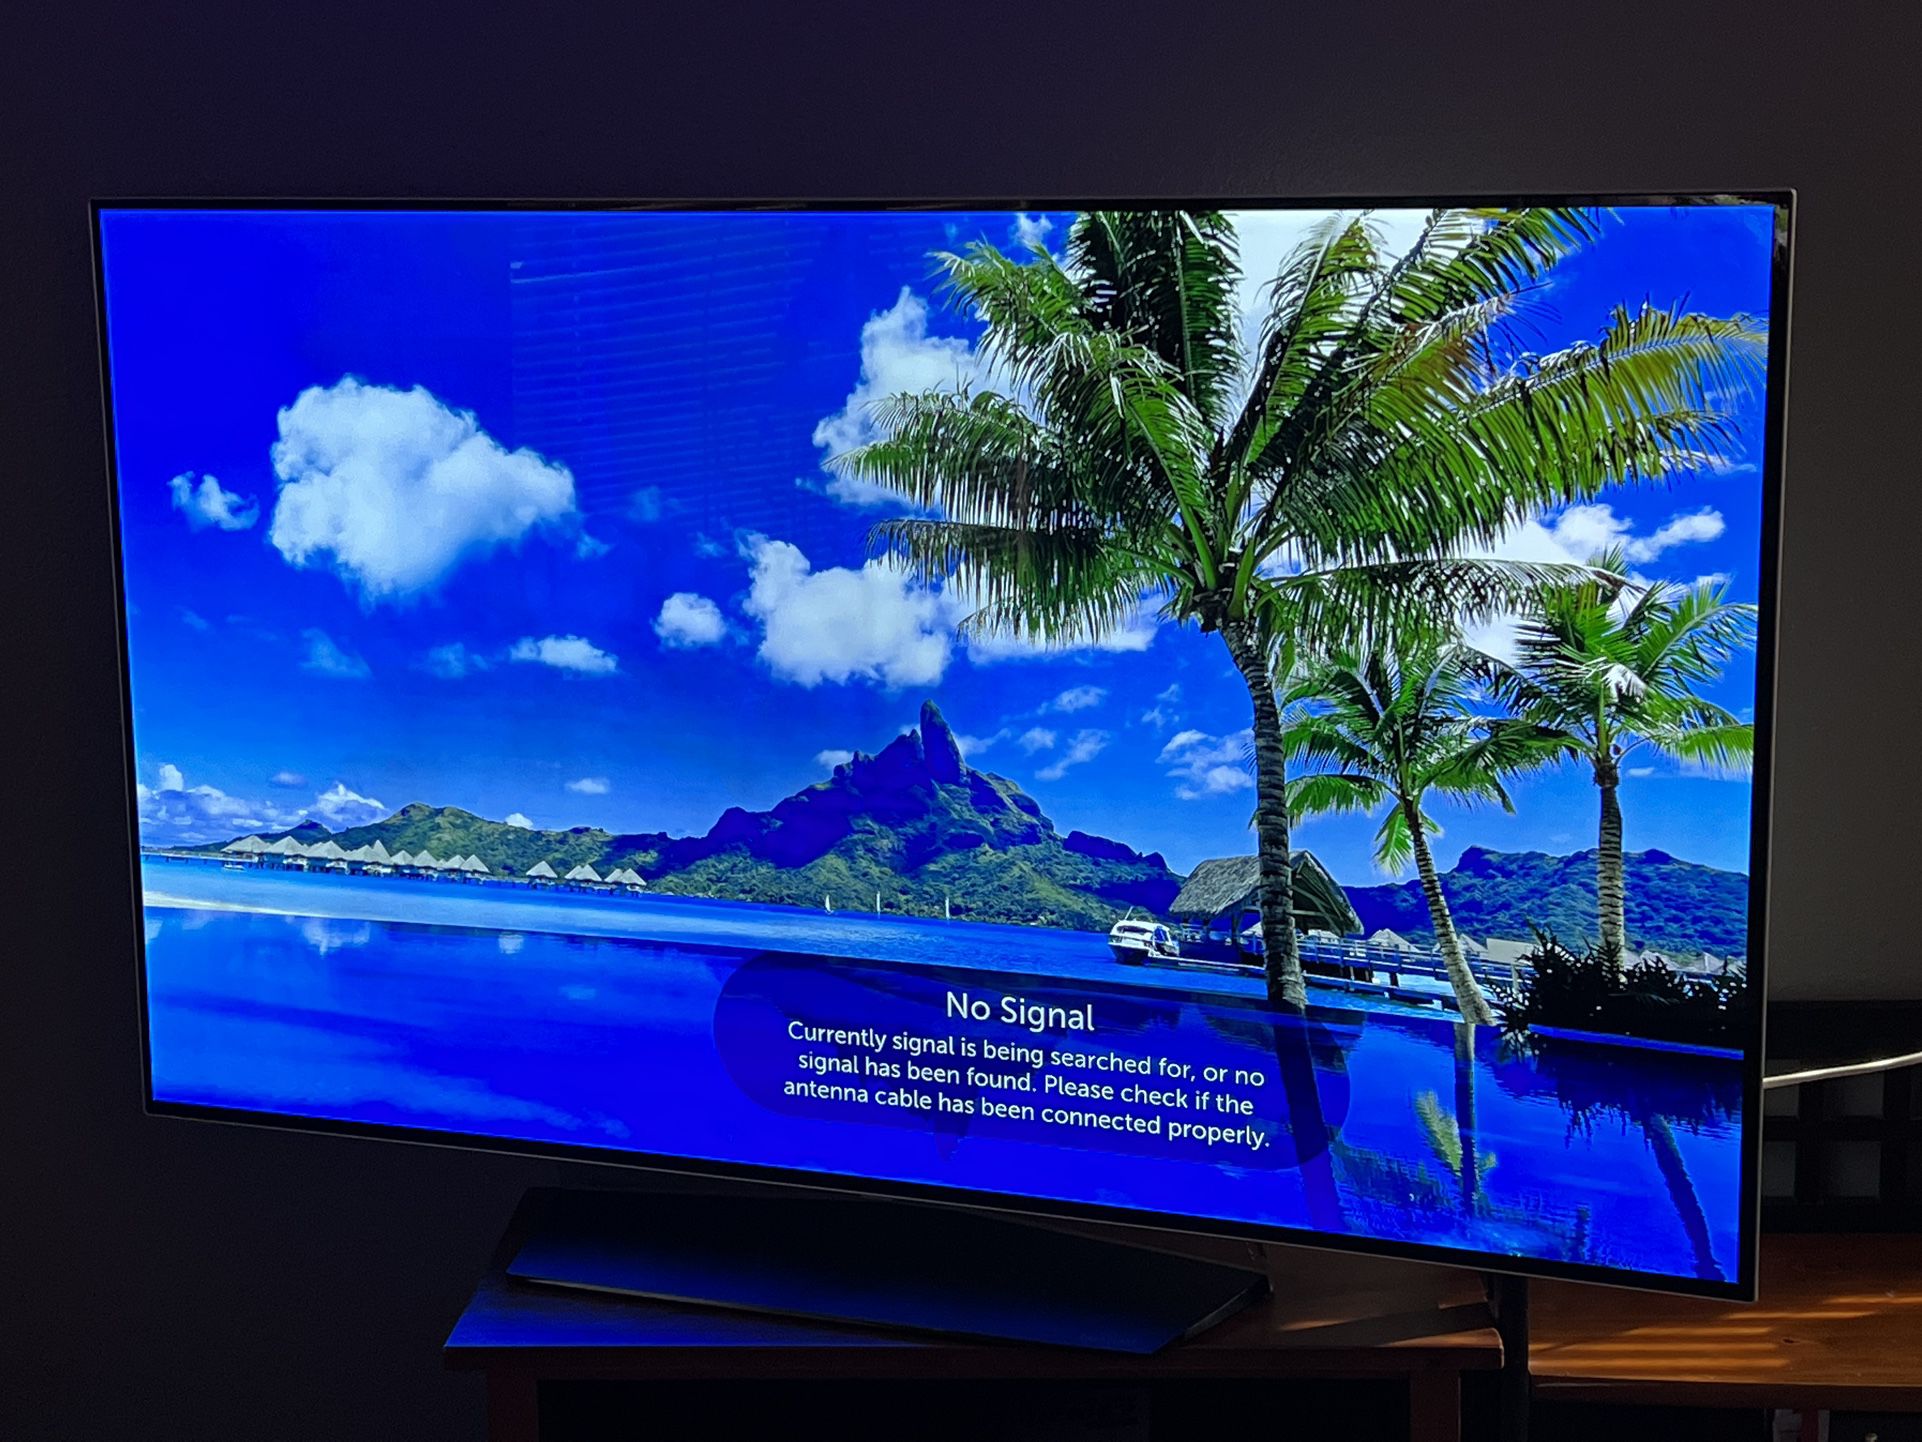 LG B7 OLED 4K HDR Smart TV - 55" 